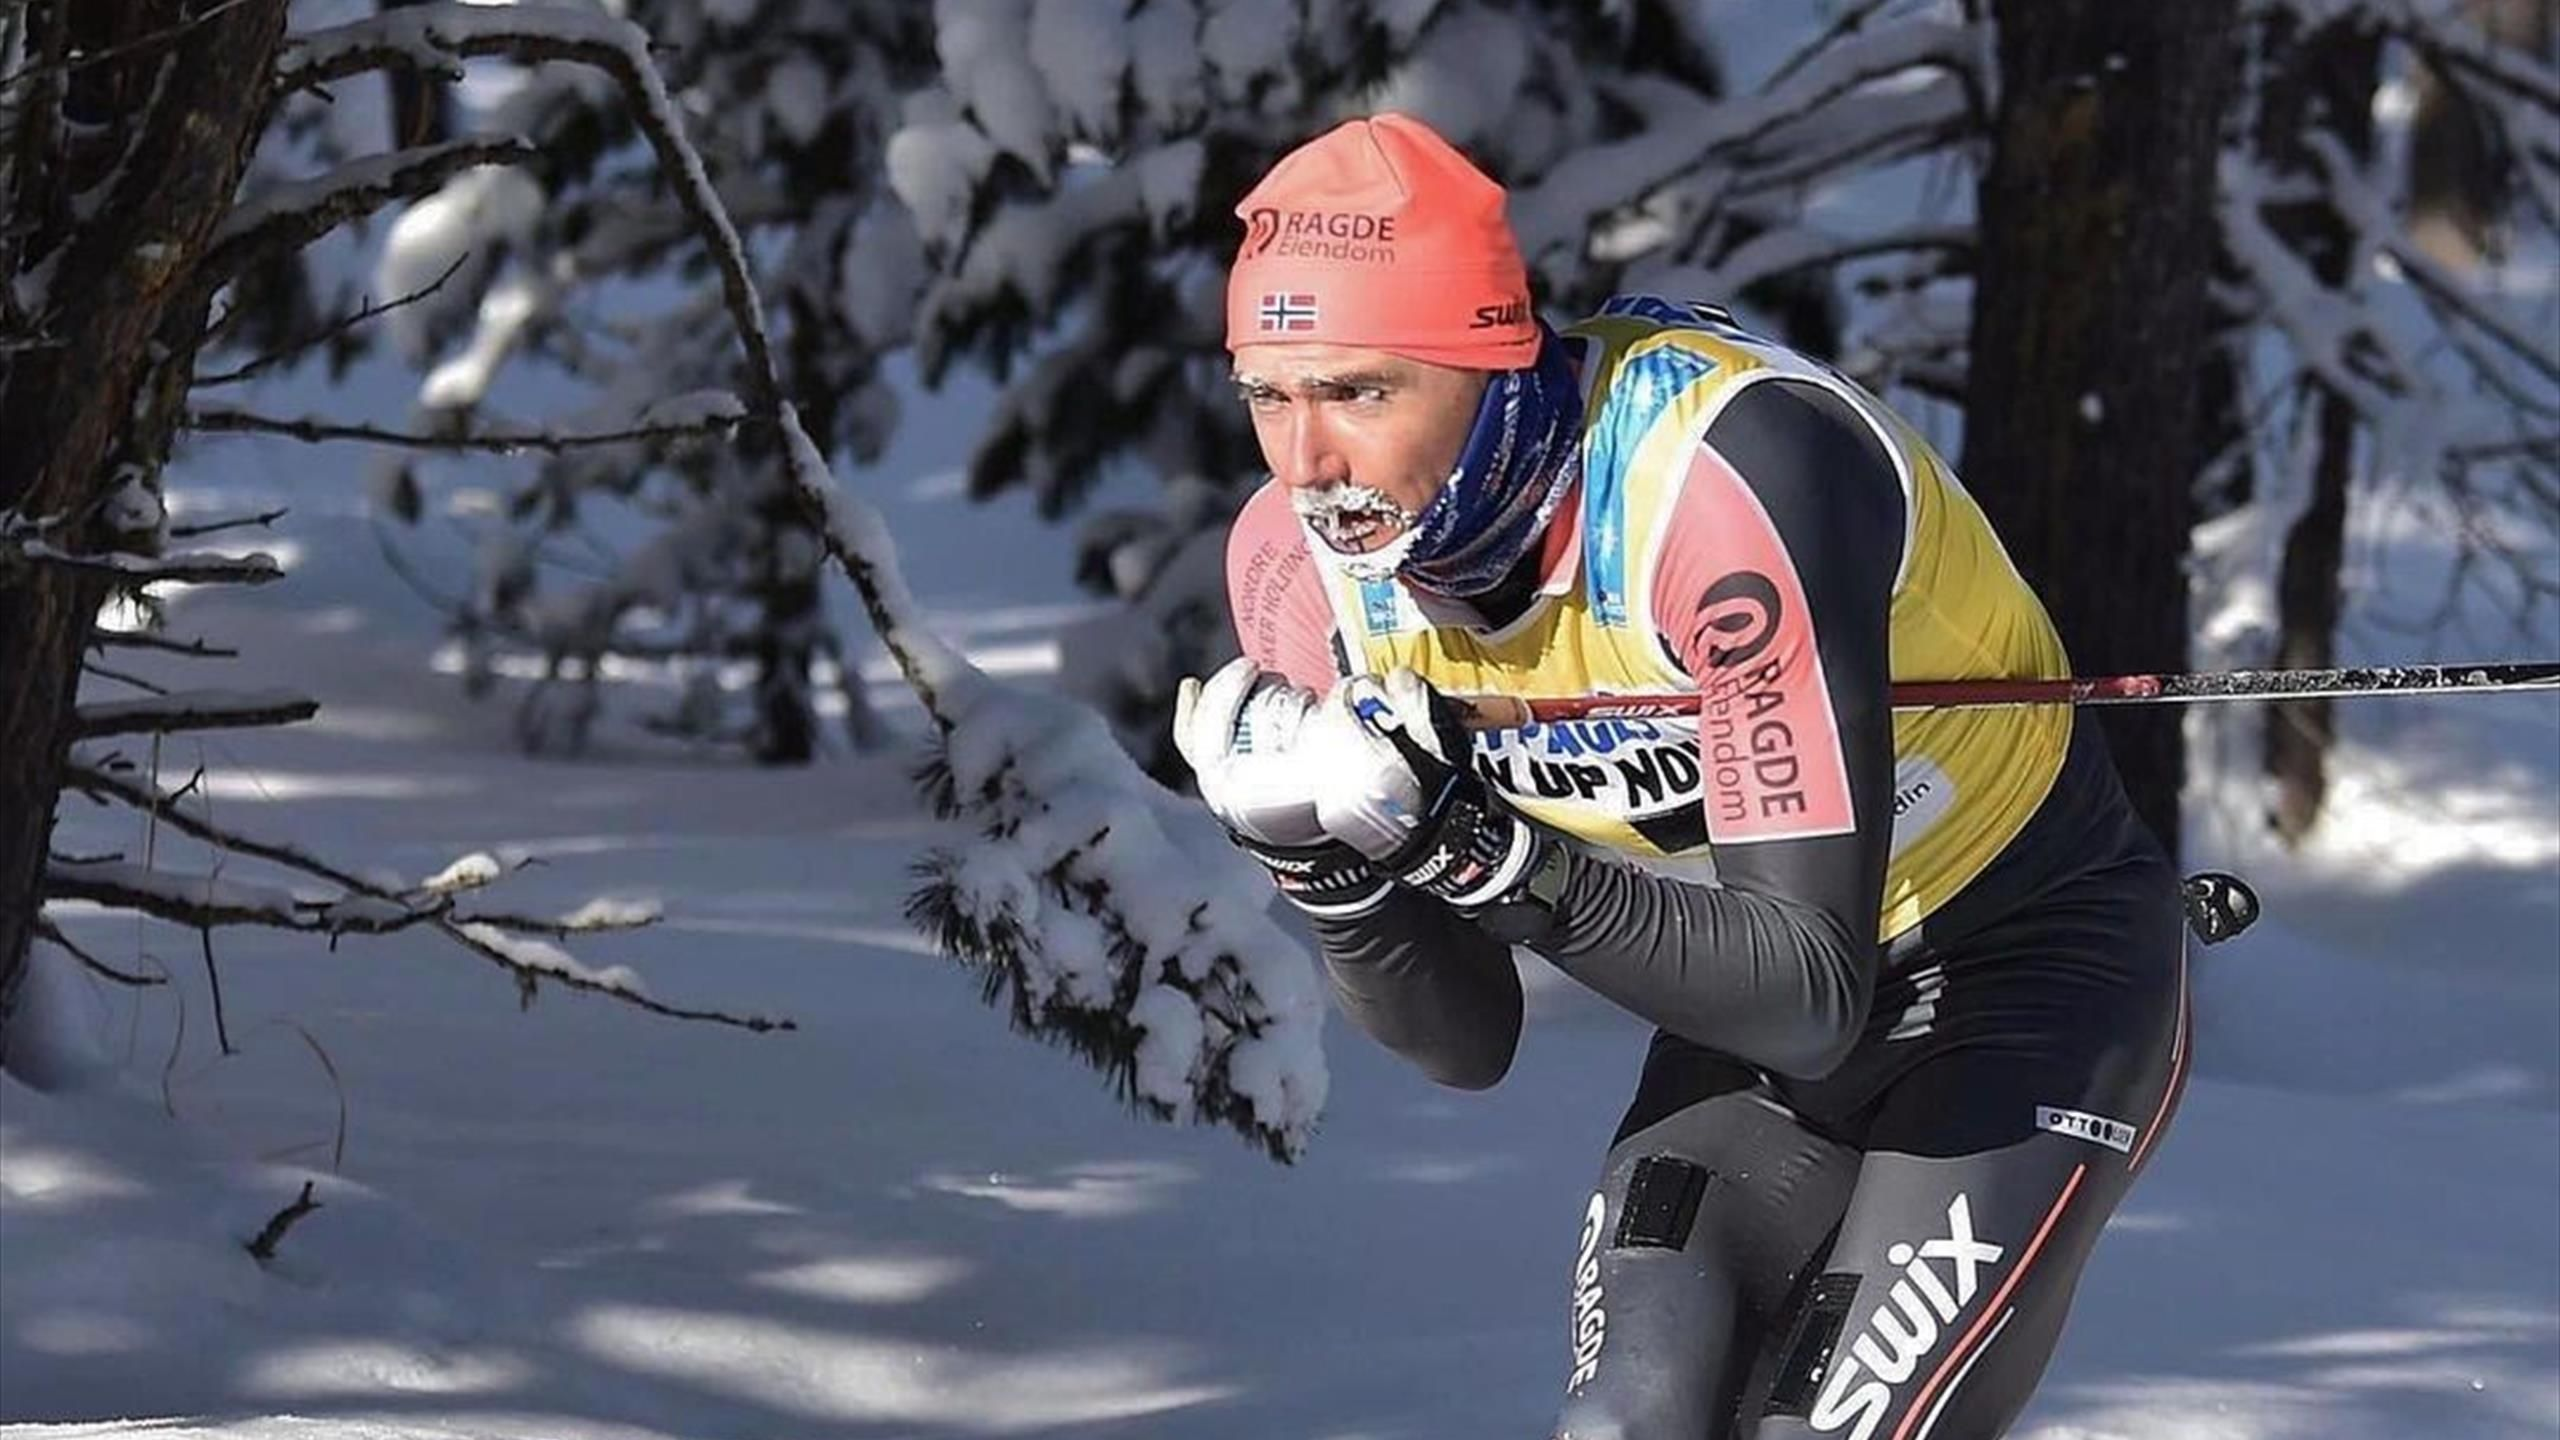 Двоим лыжникам грозит ампутация после обморожения на марафоне в Швейцарии